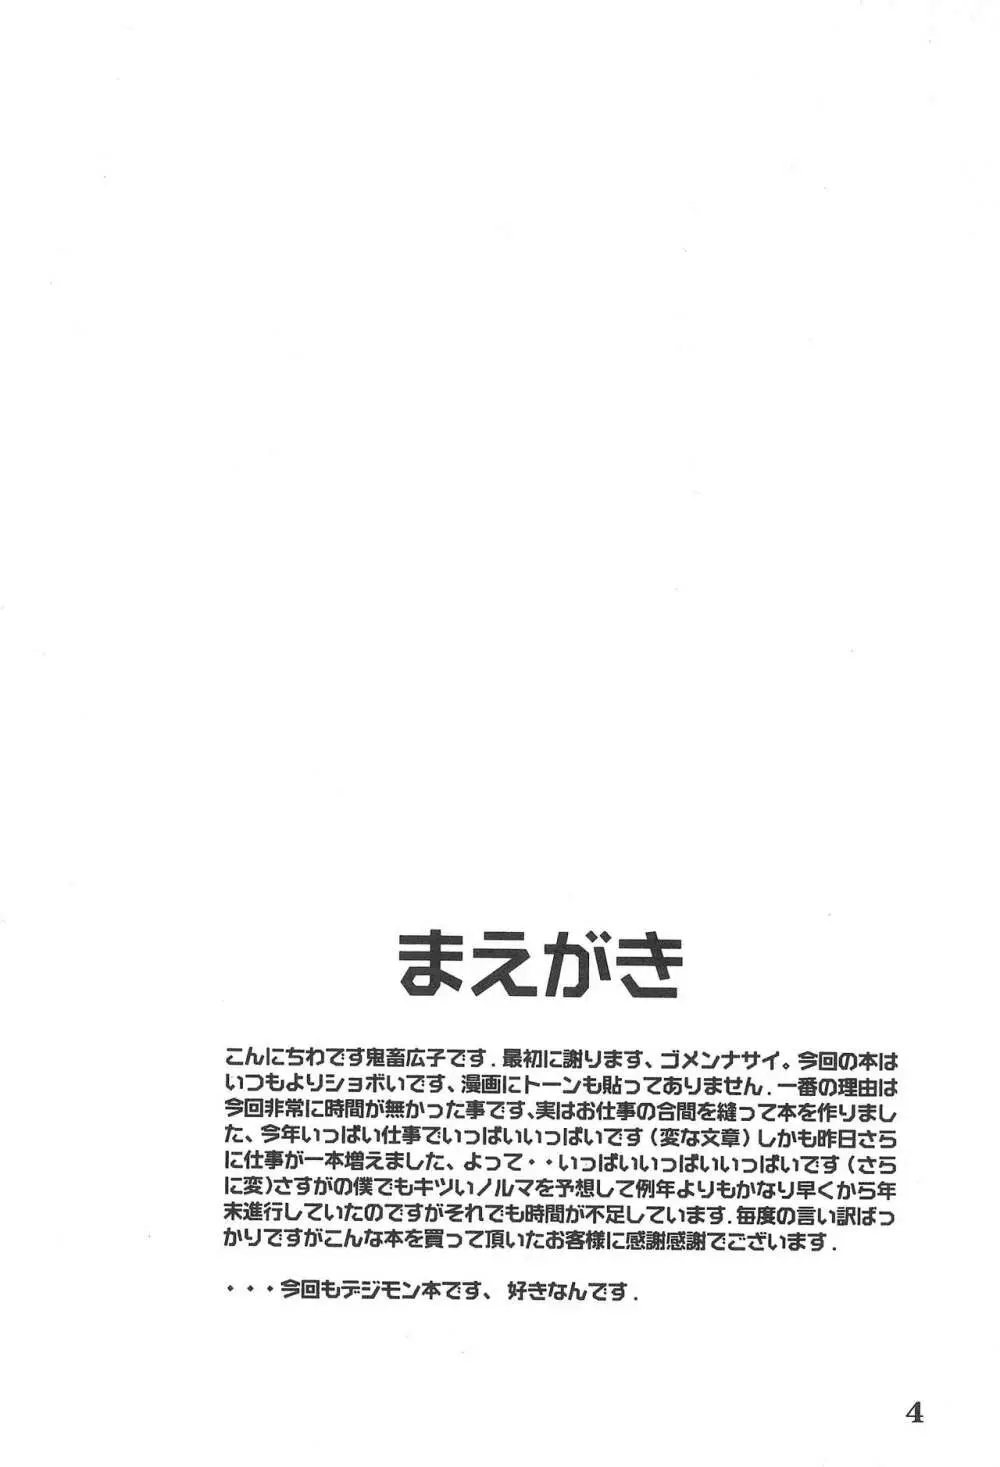 K8 KICHIKU BOOK8 COSTOM 4ページ